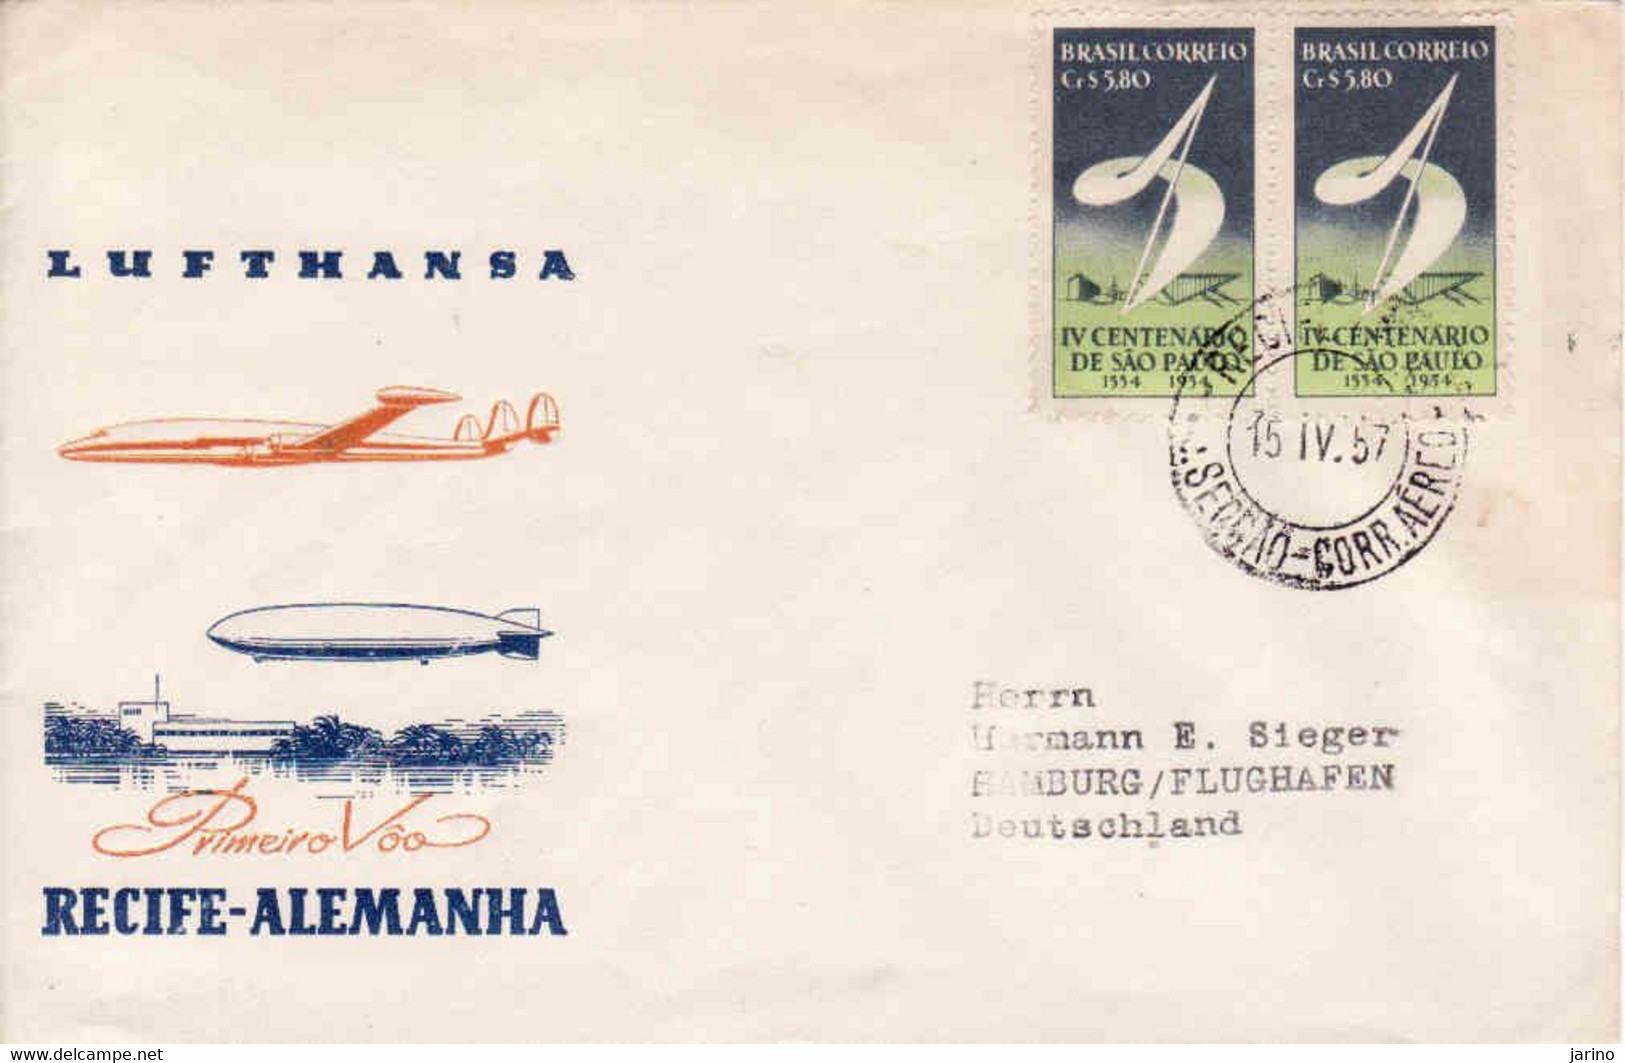 Brasilia 1957, Lufpost Lufthansa Firstflug Recife Alemania, Hamburg Flughafen - Luftpost (private Gesellschaften)